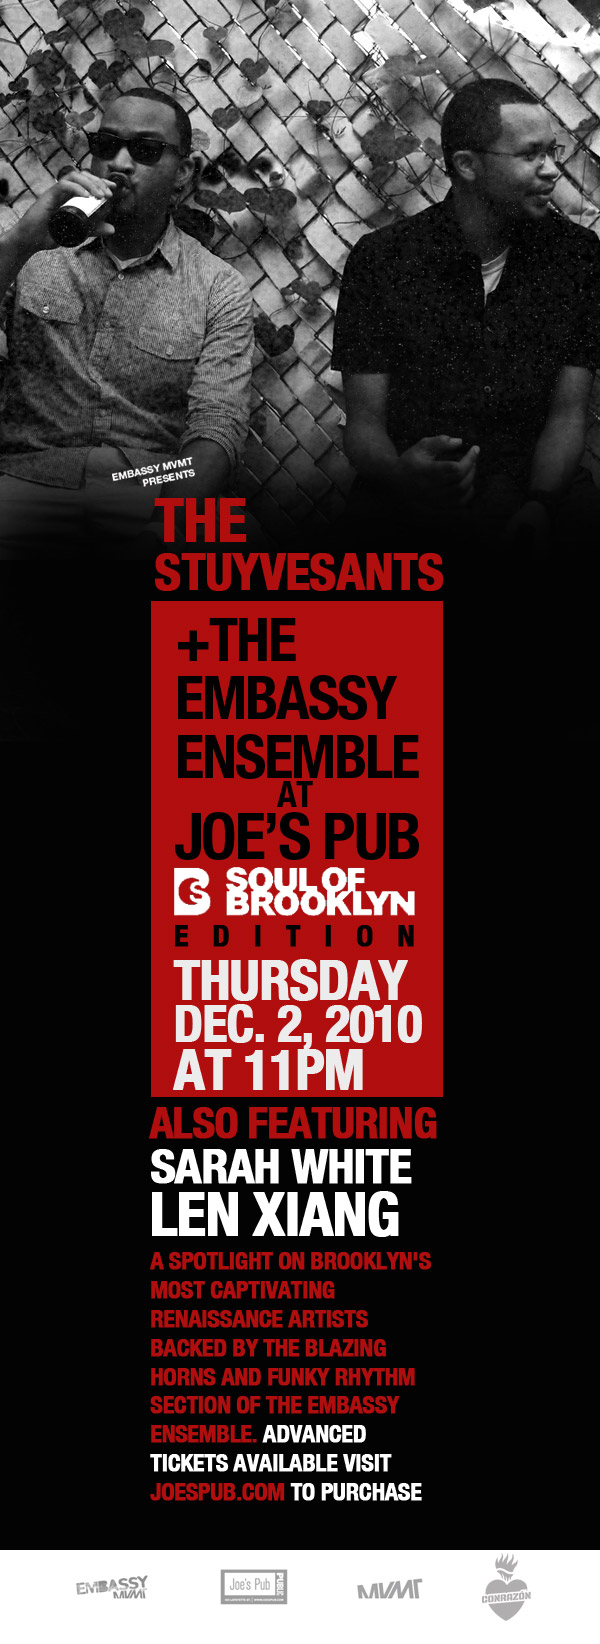 The Stuyvesants LIVE @ Joe’s Pub w/ the Embassy Ensemble, Sara White & Len Xiang